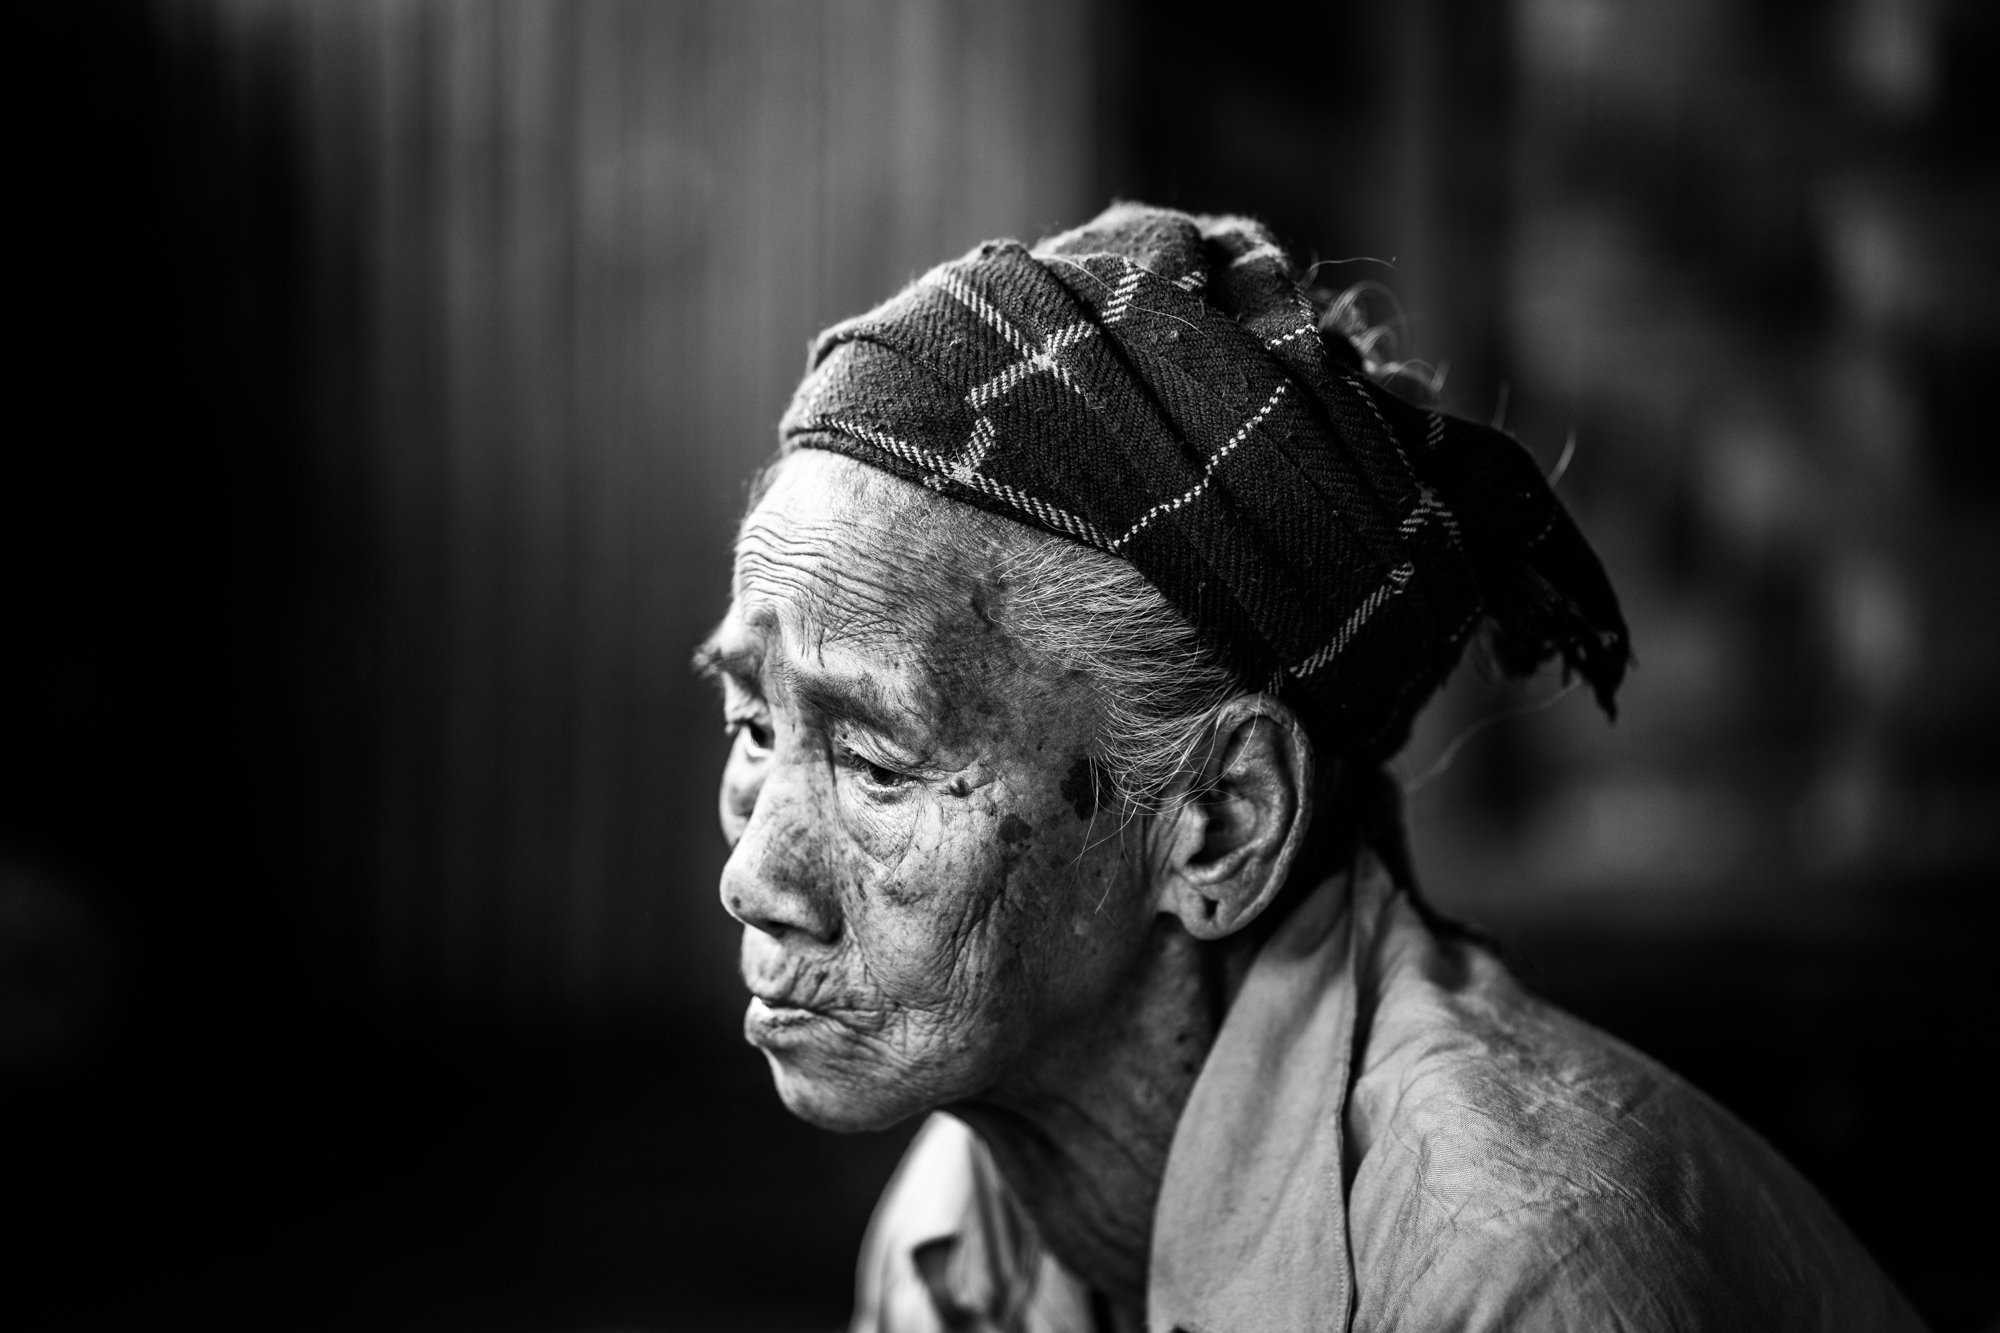 A portrait of an ethnic Burmese woman in Myanmar